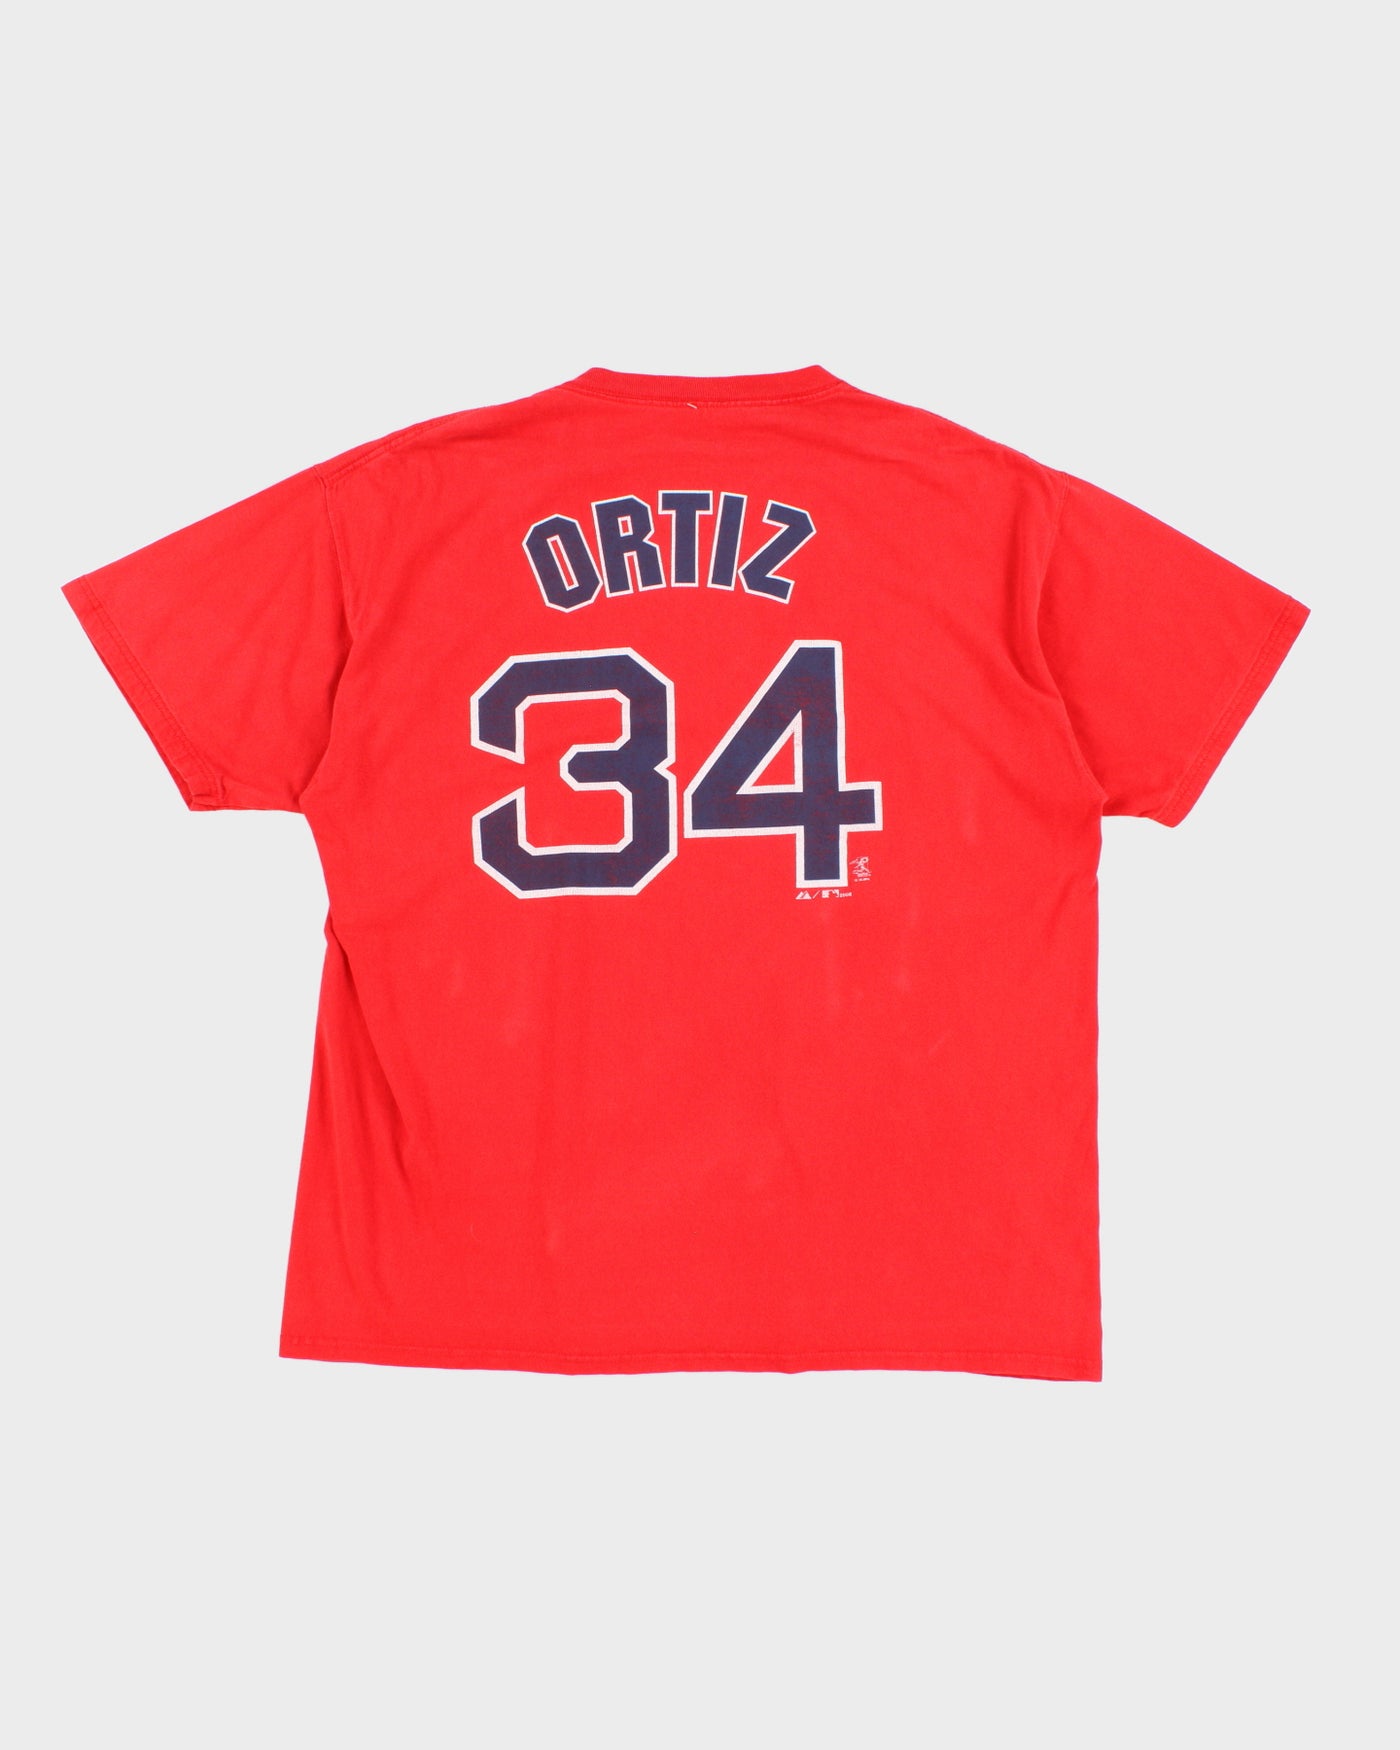 00s MLB x Boston Red Sox #34 David Ortiz T-Shirt - XL